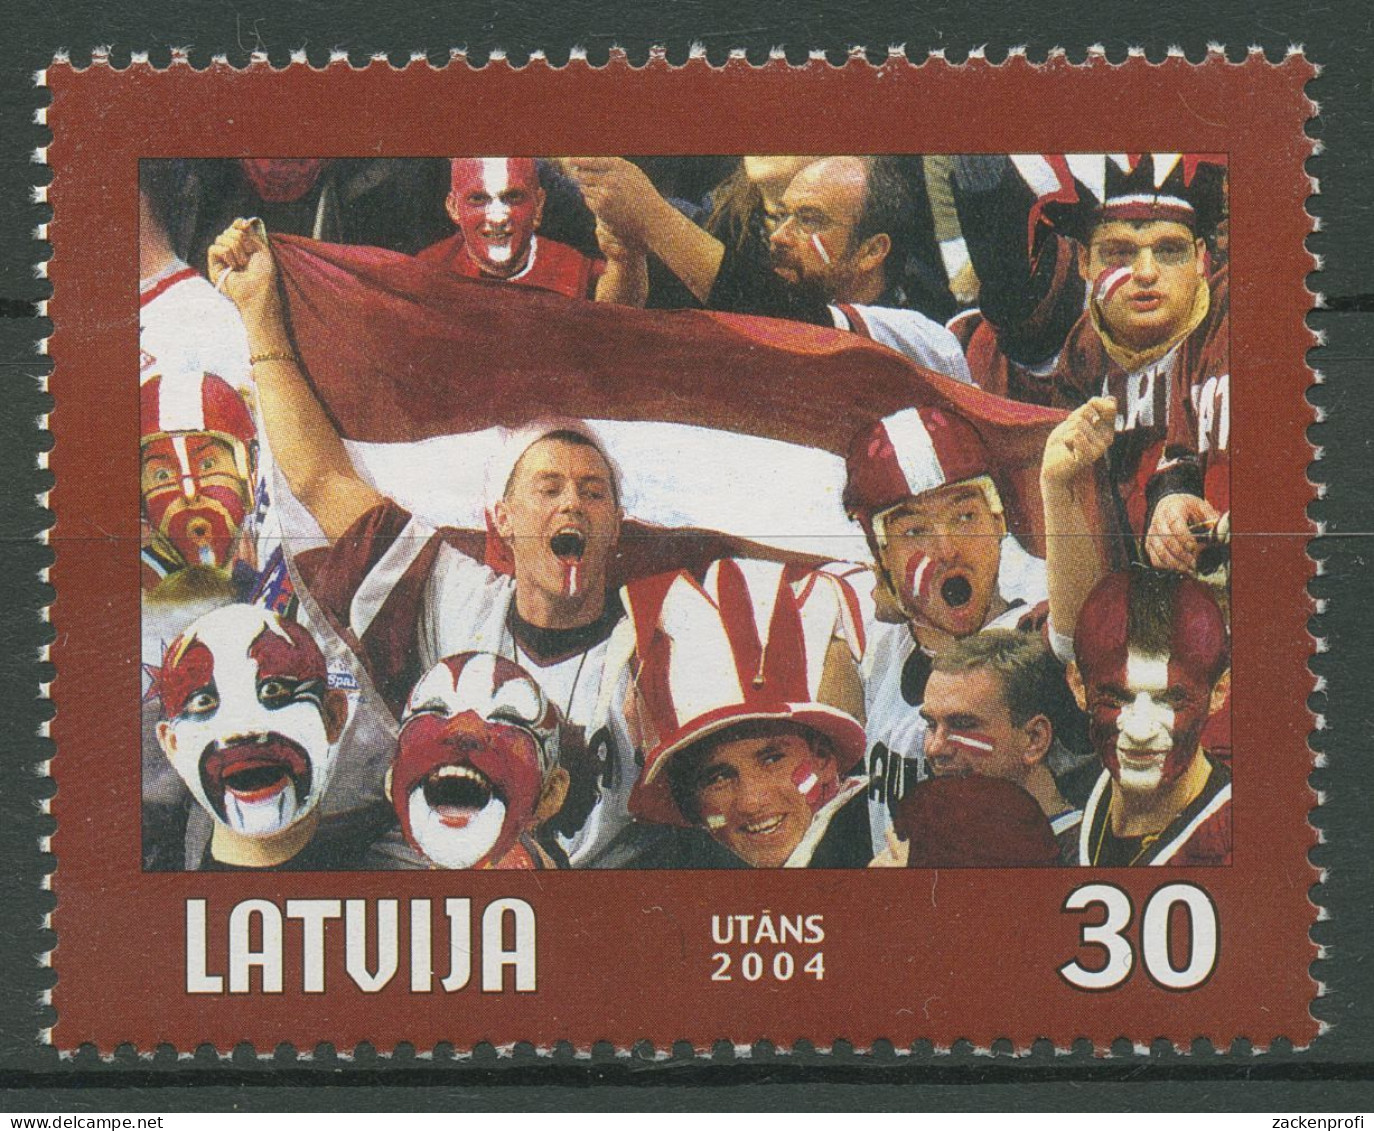 Lettland 2004 Eishockey-WM Riga 610 A Postfrisch - Lettland